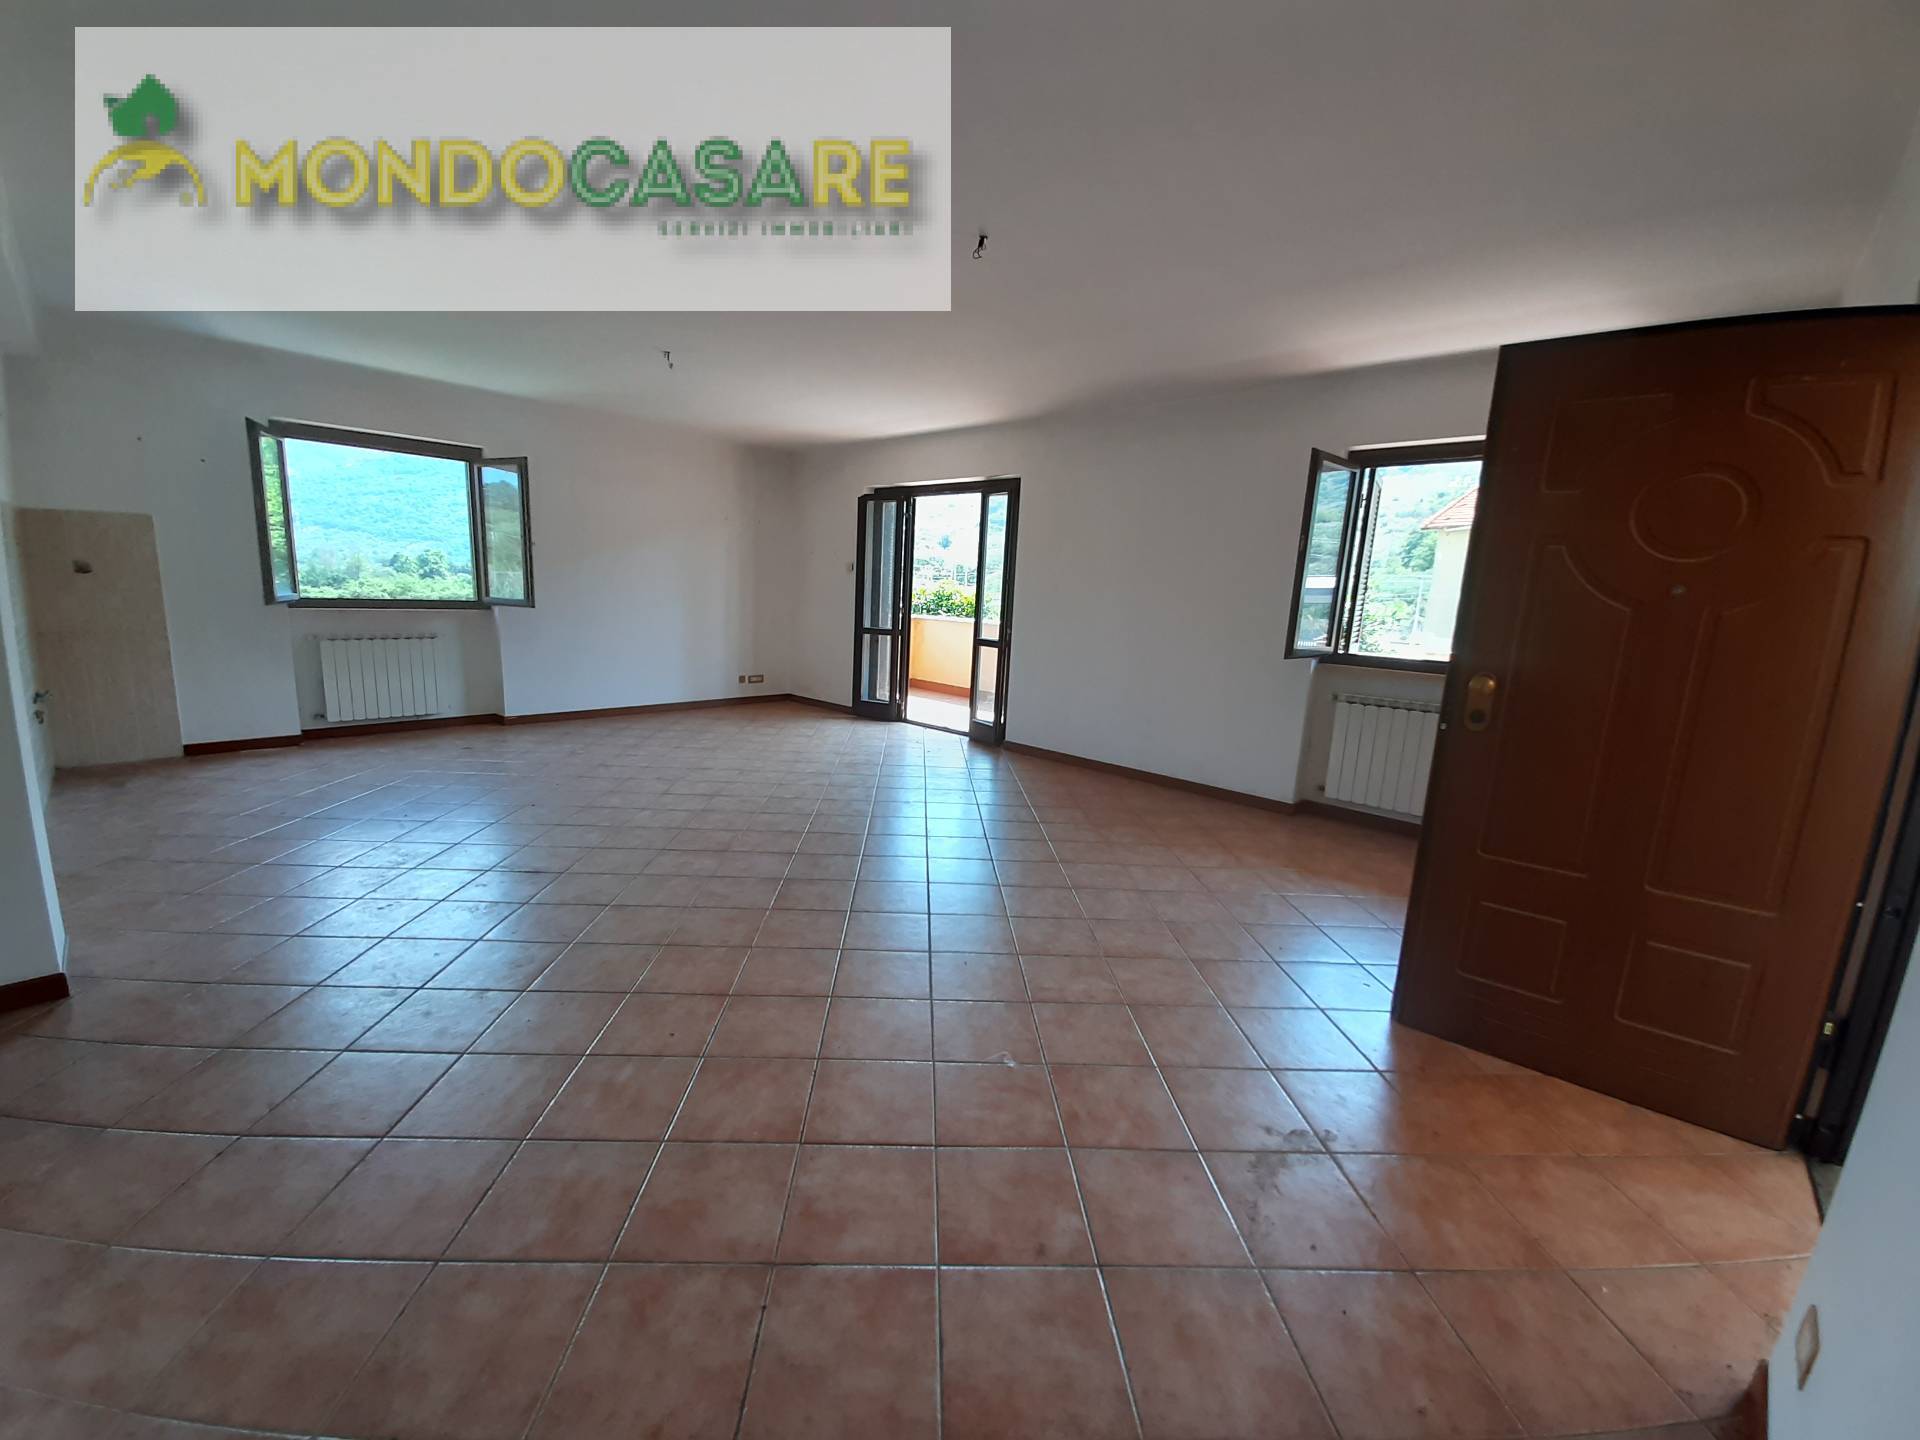 Appartamento in vendita a Marcellina, 4 locali, zona Località: ScaloFerrroviario, prezzo € 103.000 | CambioCasa.it